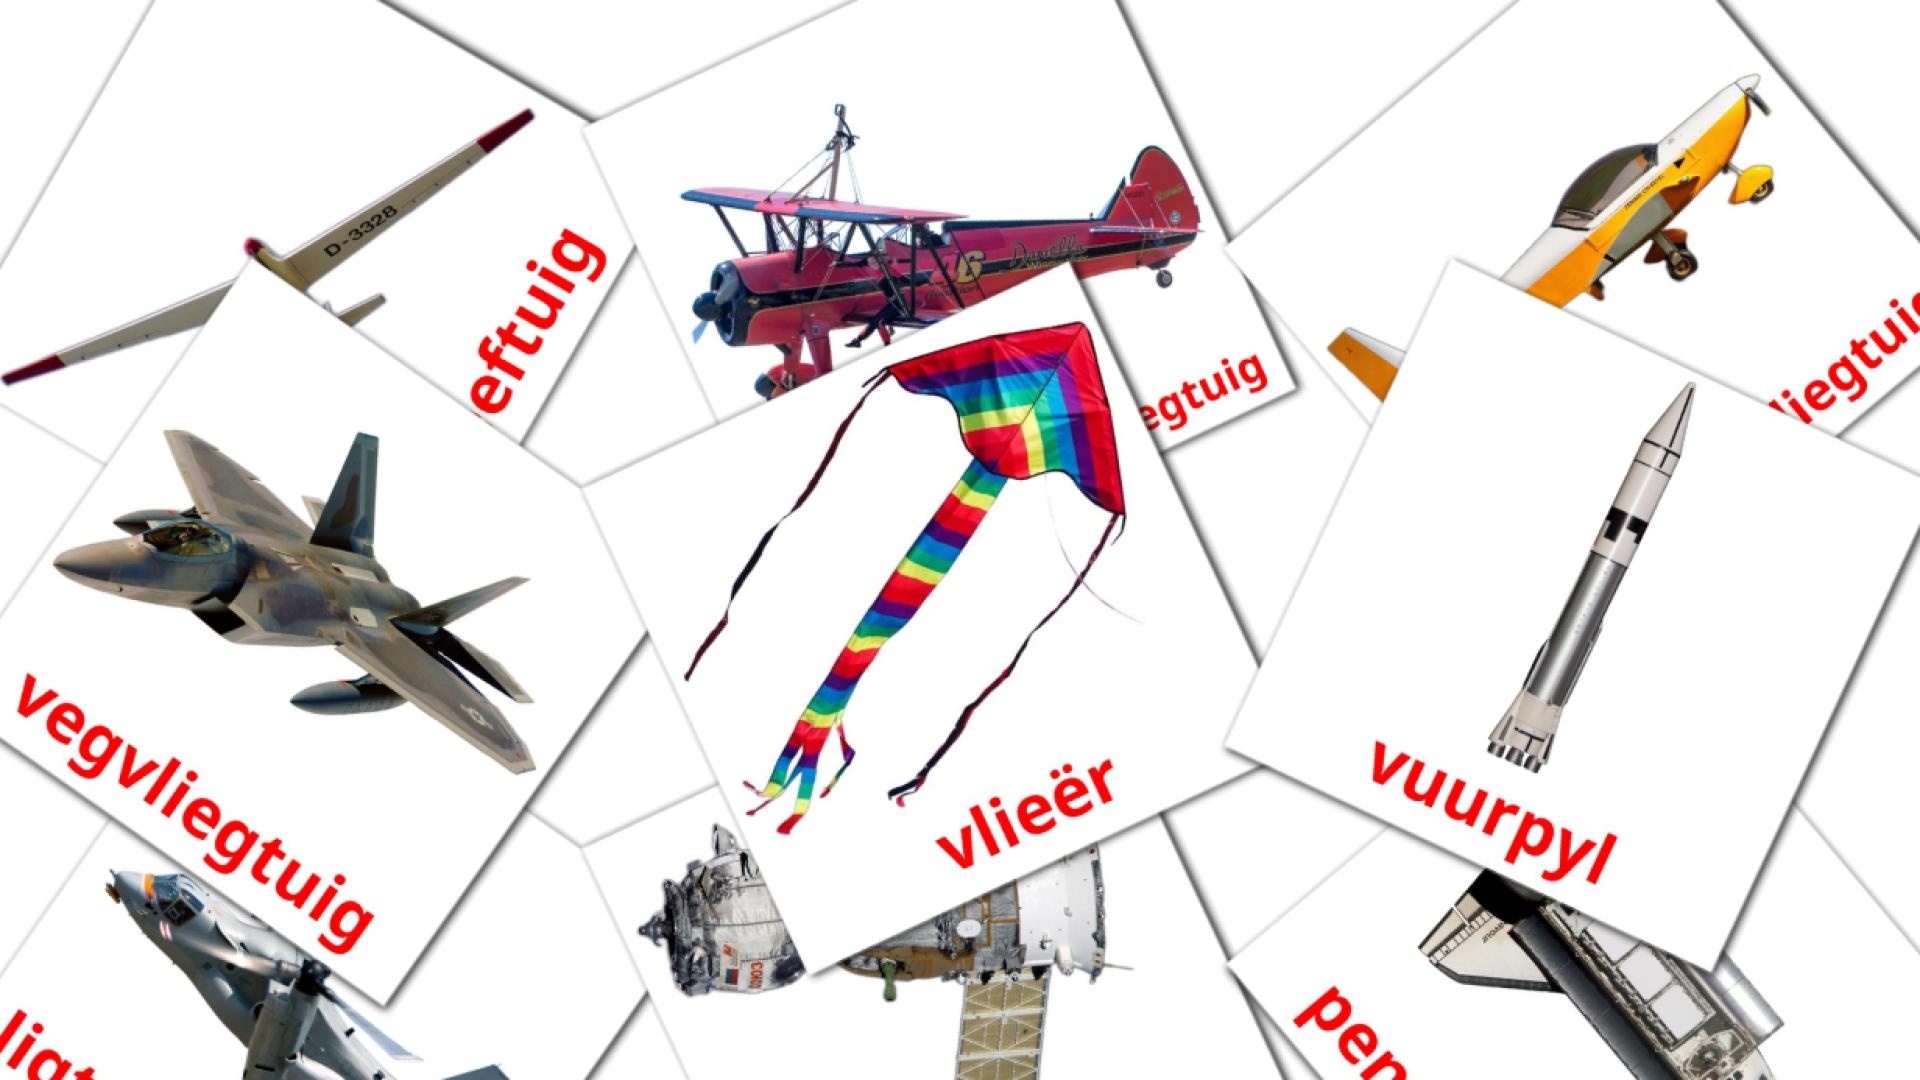 Aircraft - afrikaans vocabulary cards